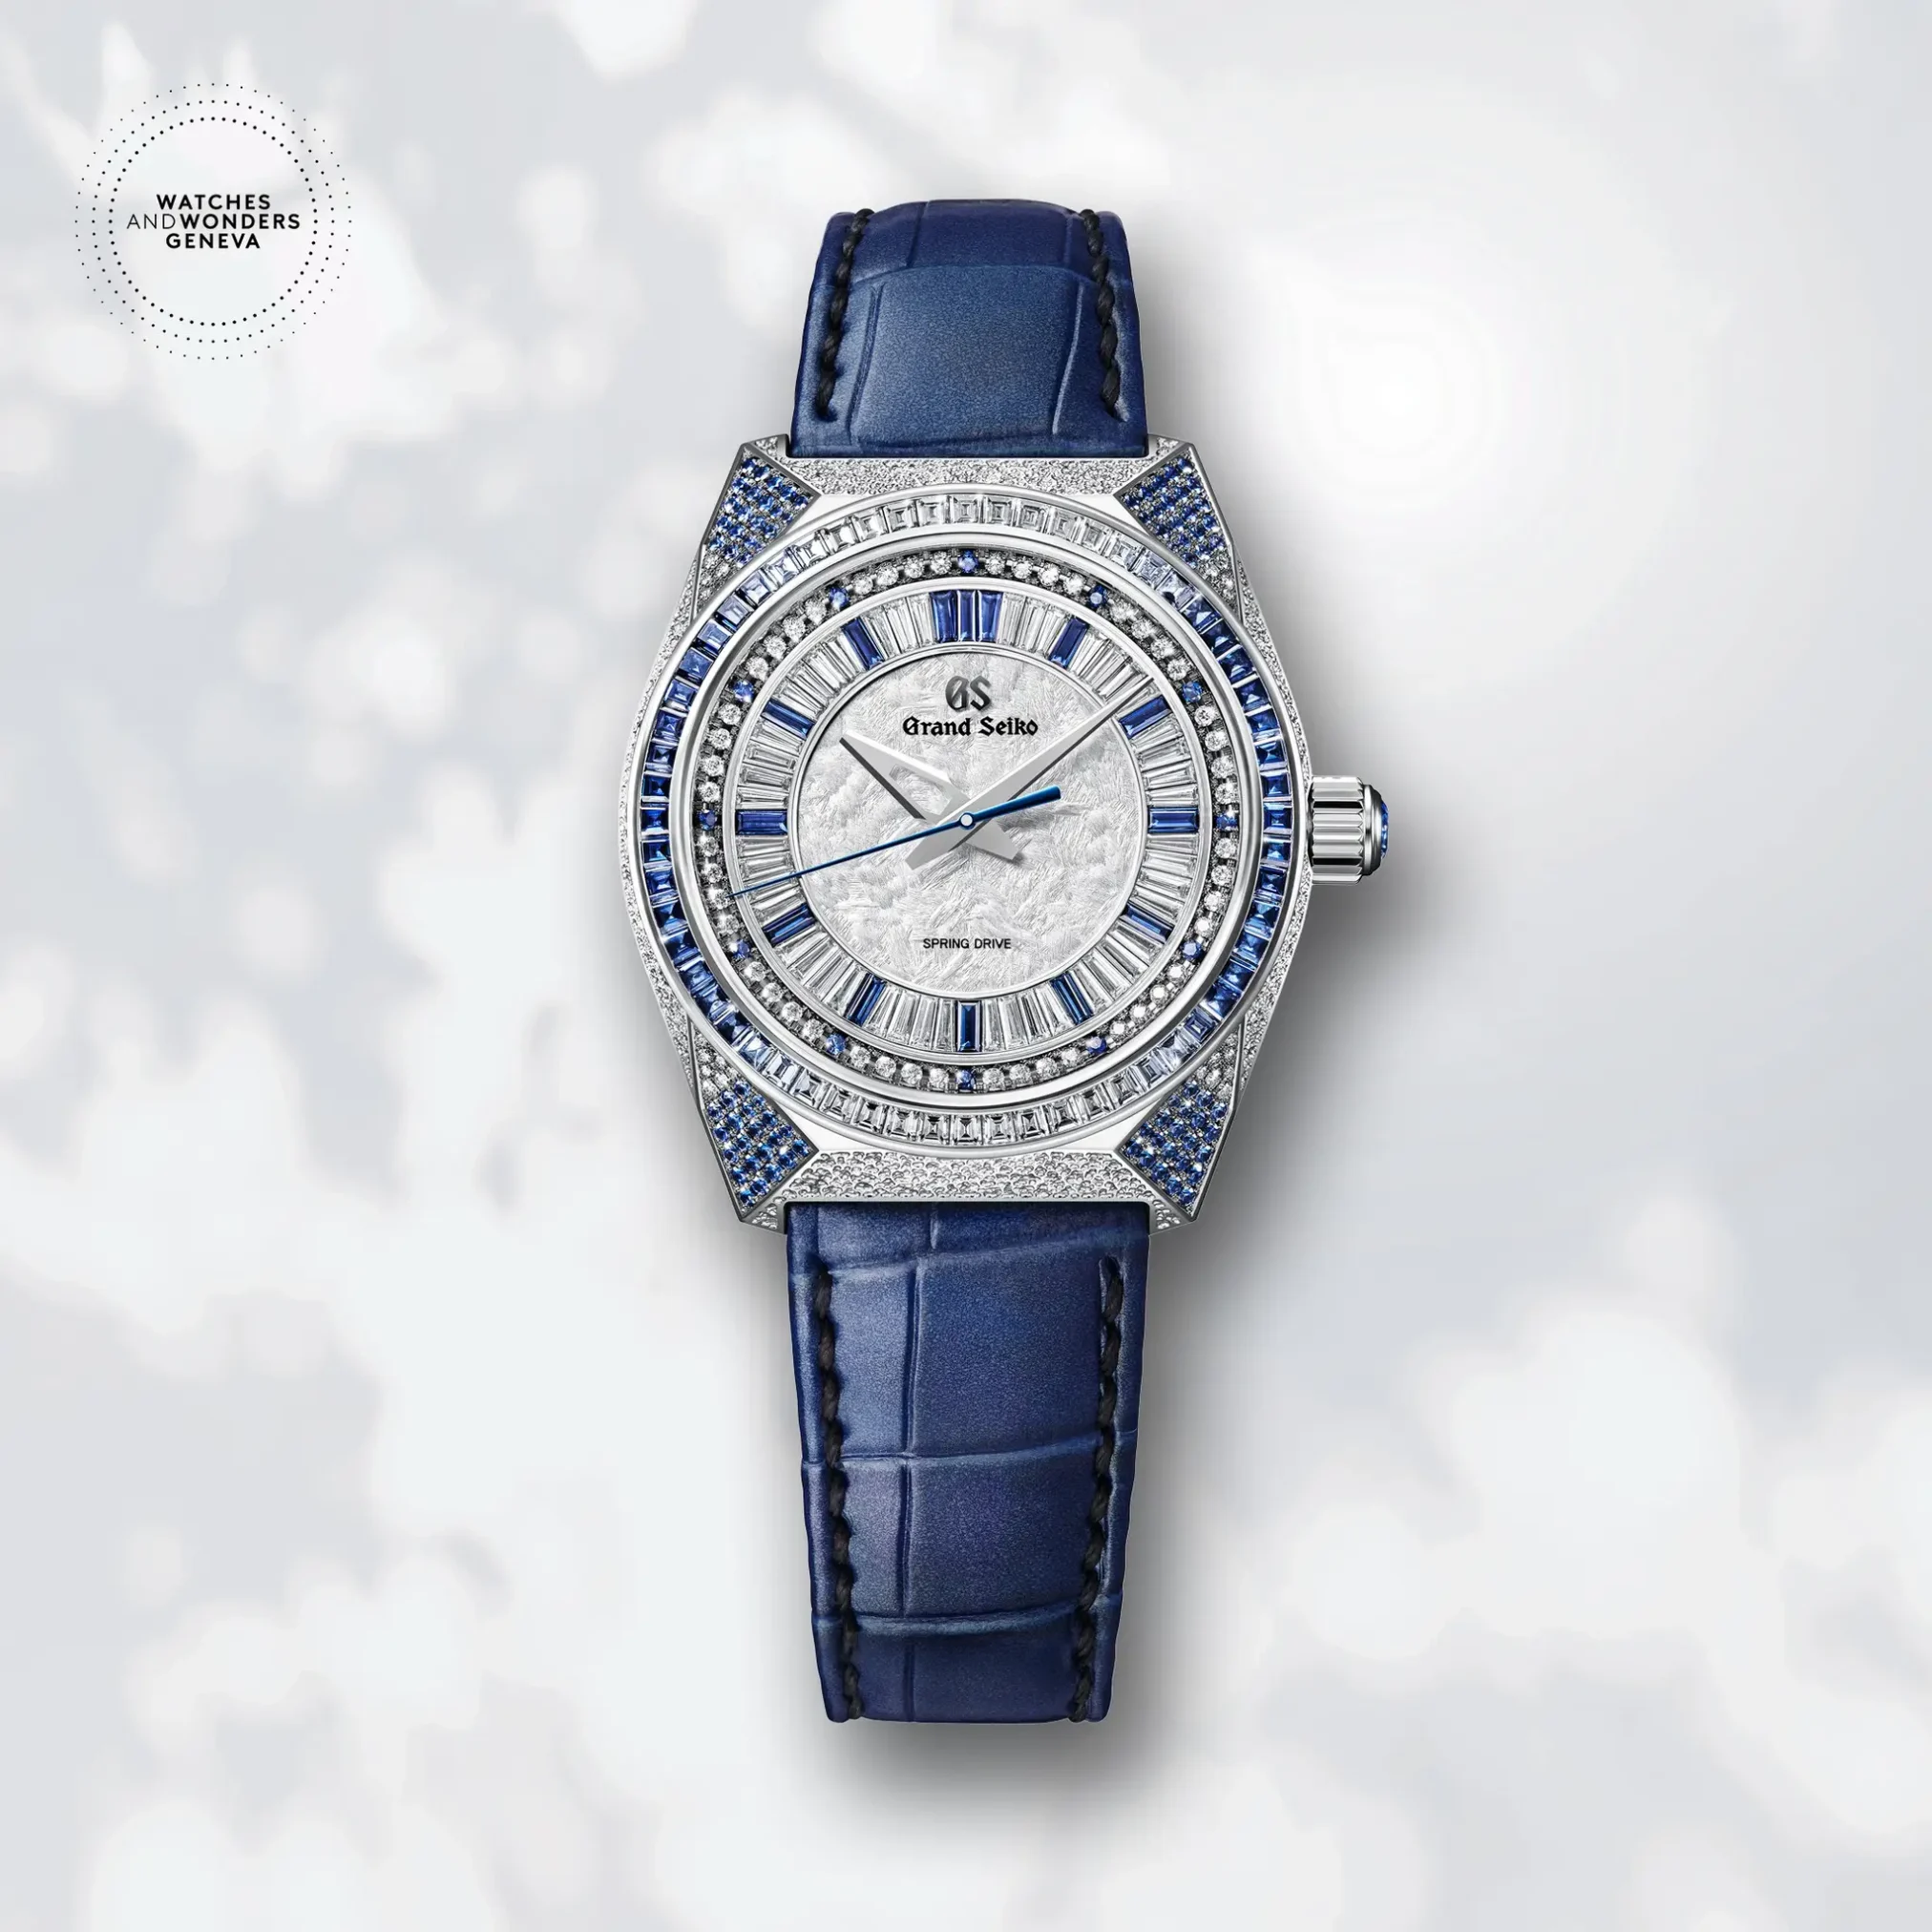 Đồng hồ Grand Seiko Masterpiece Collection Limited Edition SBGD215 mặt số xà cừ. Dây đeo bằng da. Thân vỏ bằng platium.